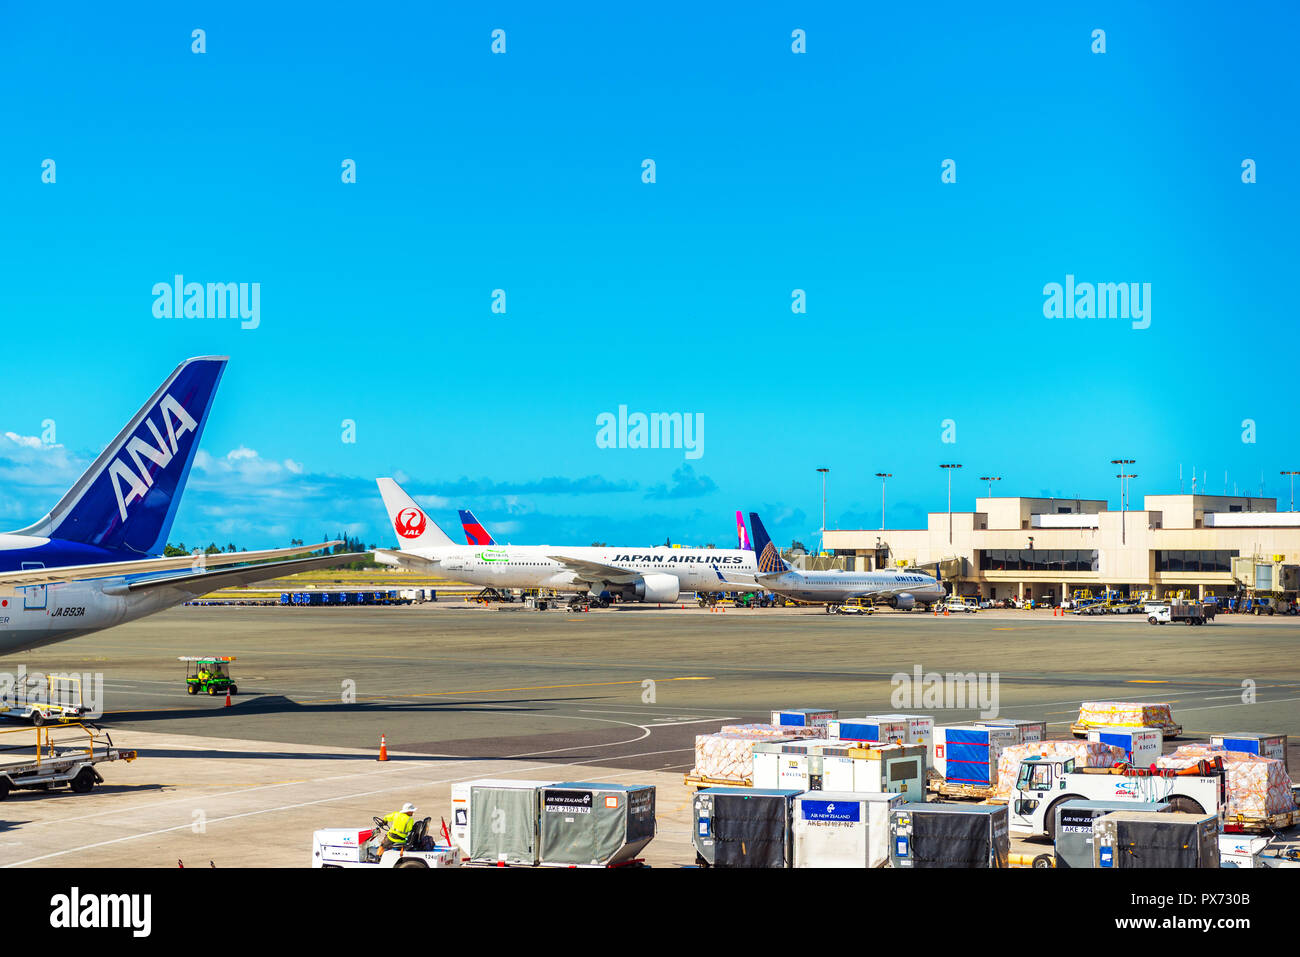 HONOLULU, Hawaii - Februar 16, 2018: Blick auf die Flugzeuge am Flughafen. Kopieren Sie Platz für Text Stockfoto